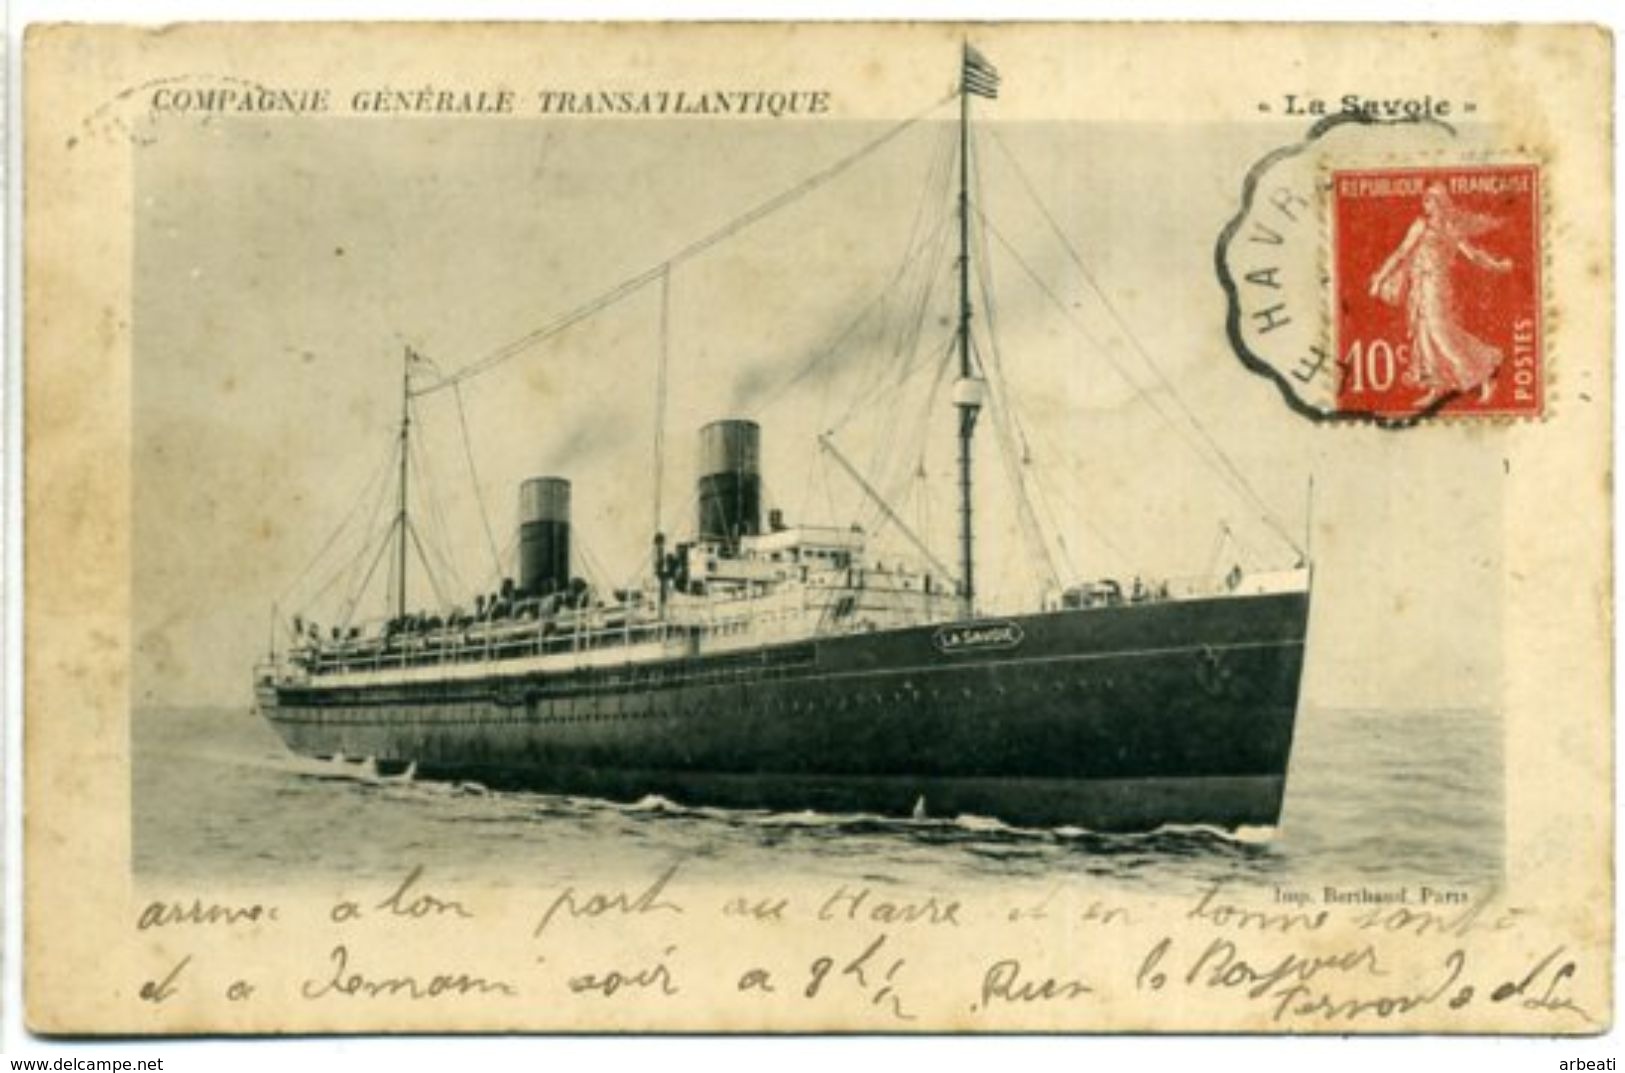 Compagnie Générale Transatlantique - "La Savoie" - Dampfer